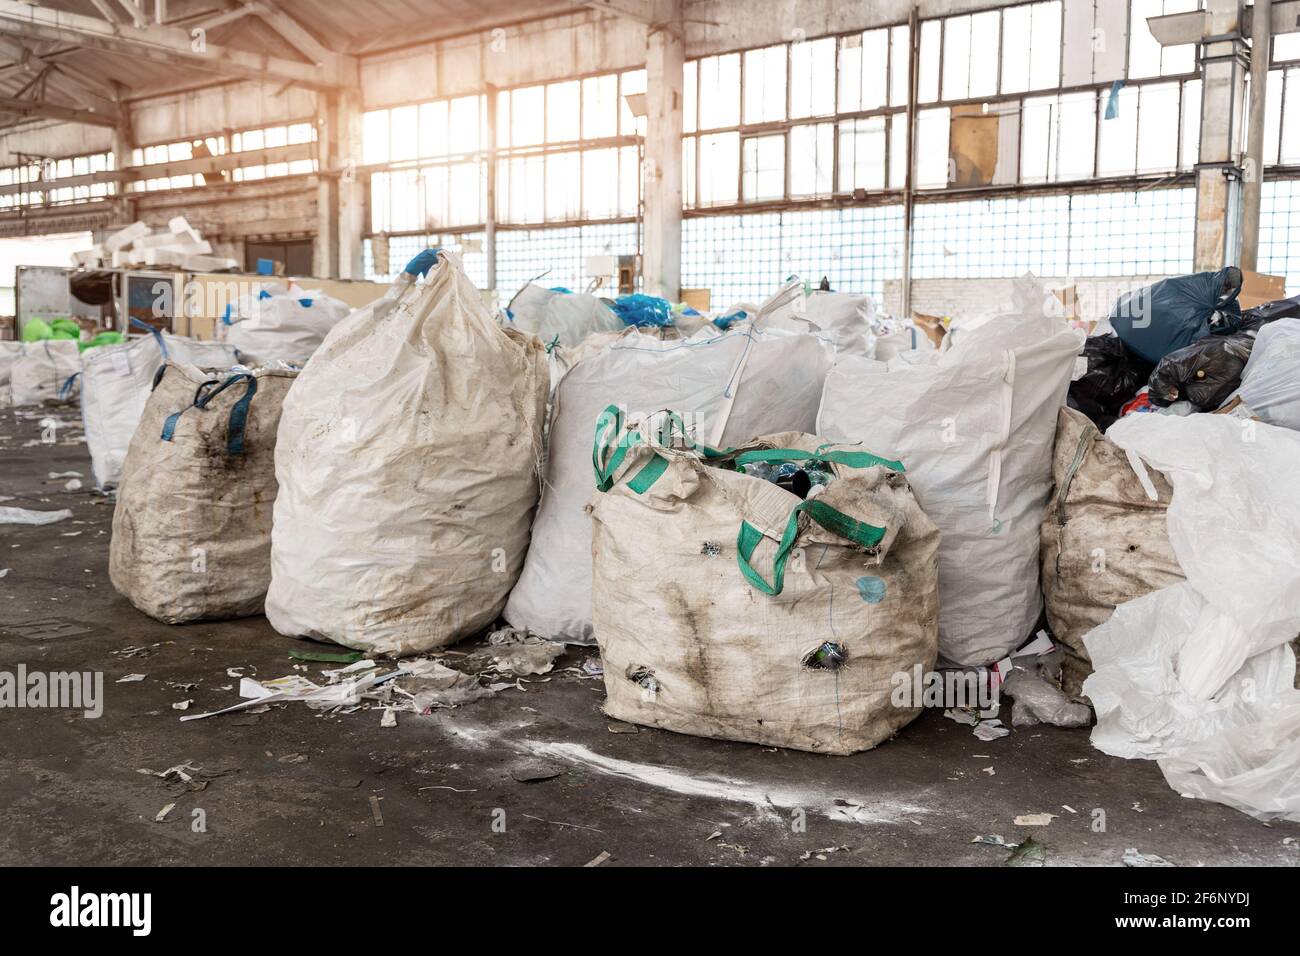 Haufen von vielen schmutzigen Big-Bag-Behältern mit gebrauchten Wasser PET- Flaschen, die für die Wiederverwertung und Wiederverwendung bei  aufgelassenen Recycling gesammelt werden Werkslager Stockfotografie - Alamy